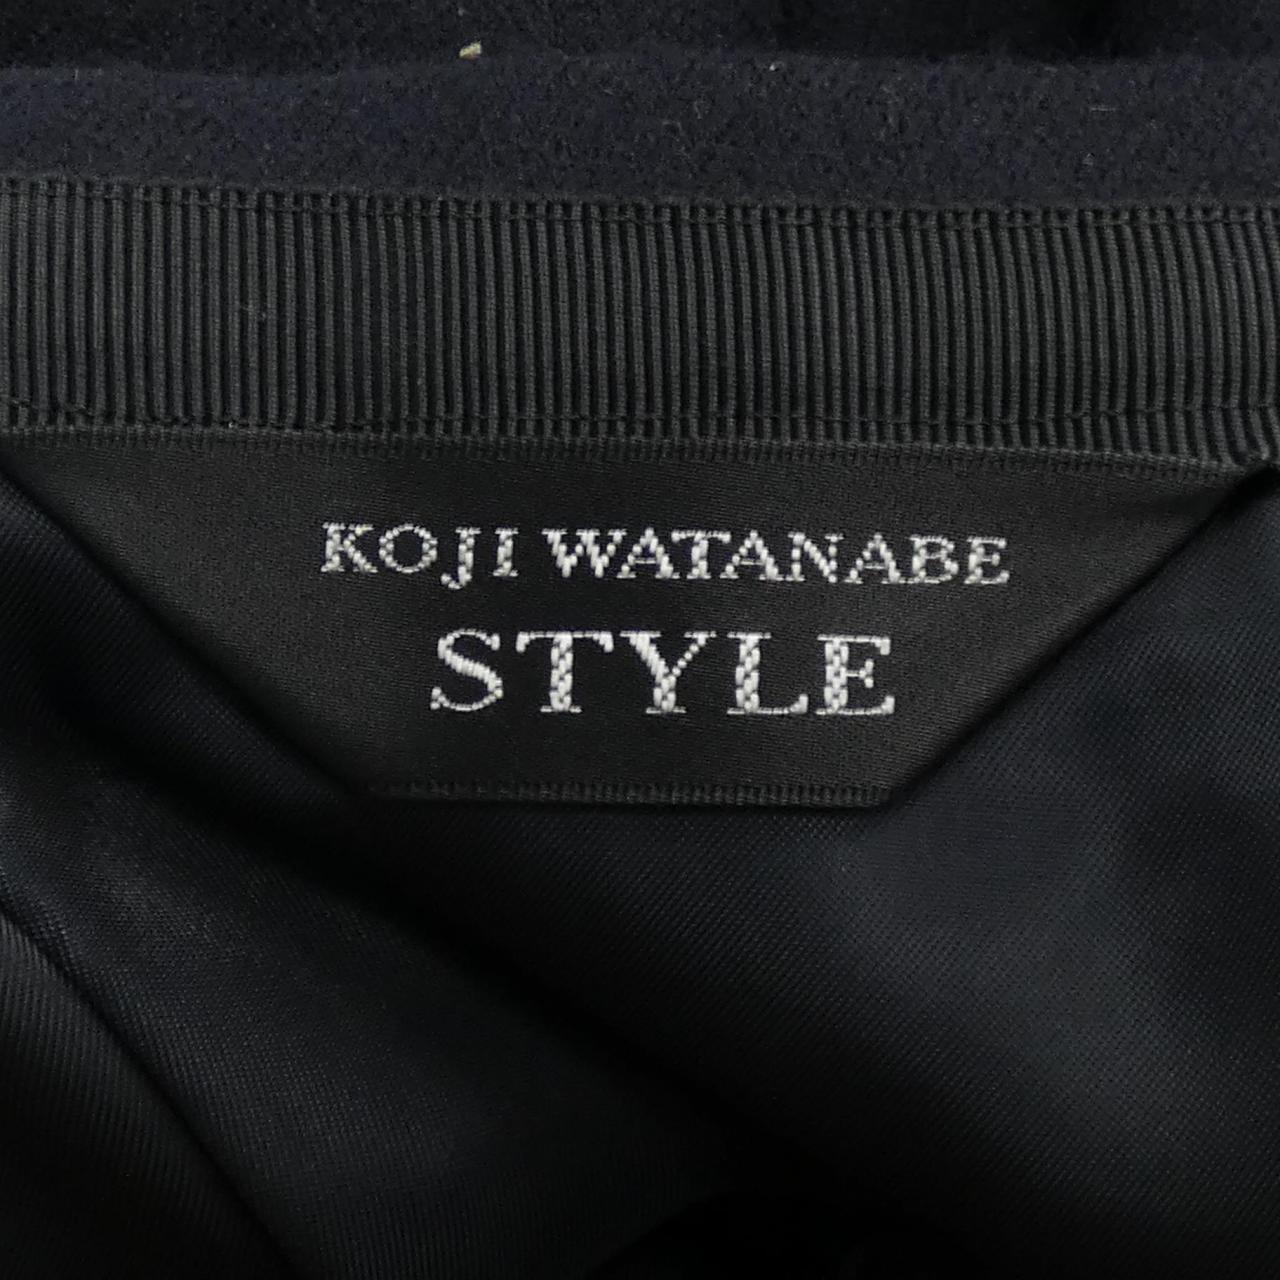 KOJI WATANABE suit